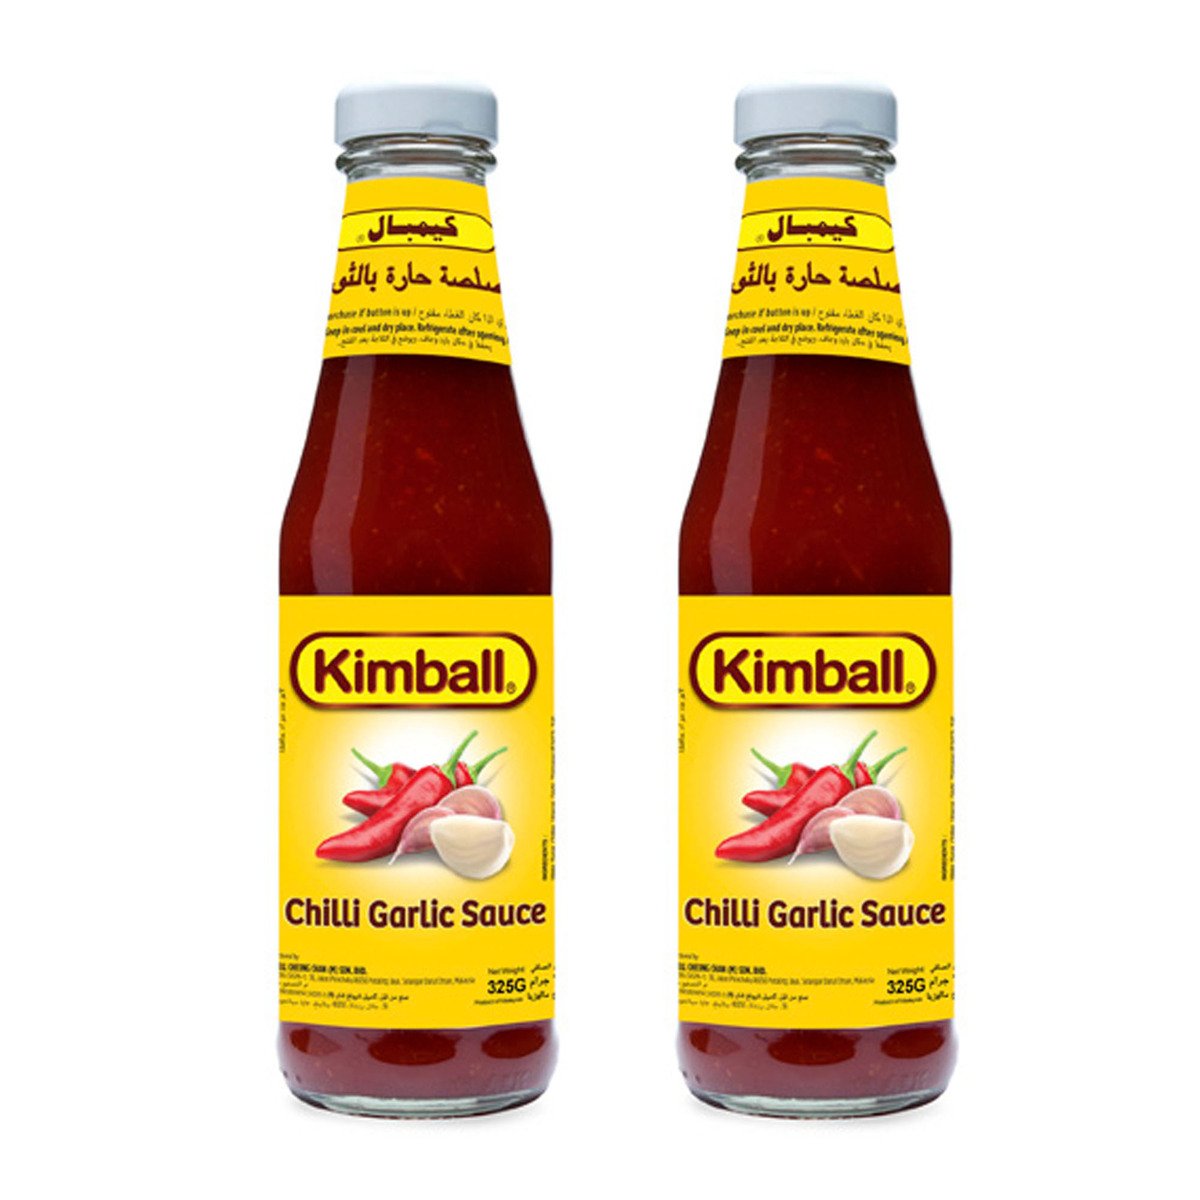 Kimball Chilli & Garlic Sauce Value Pack 2 x 325g